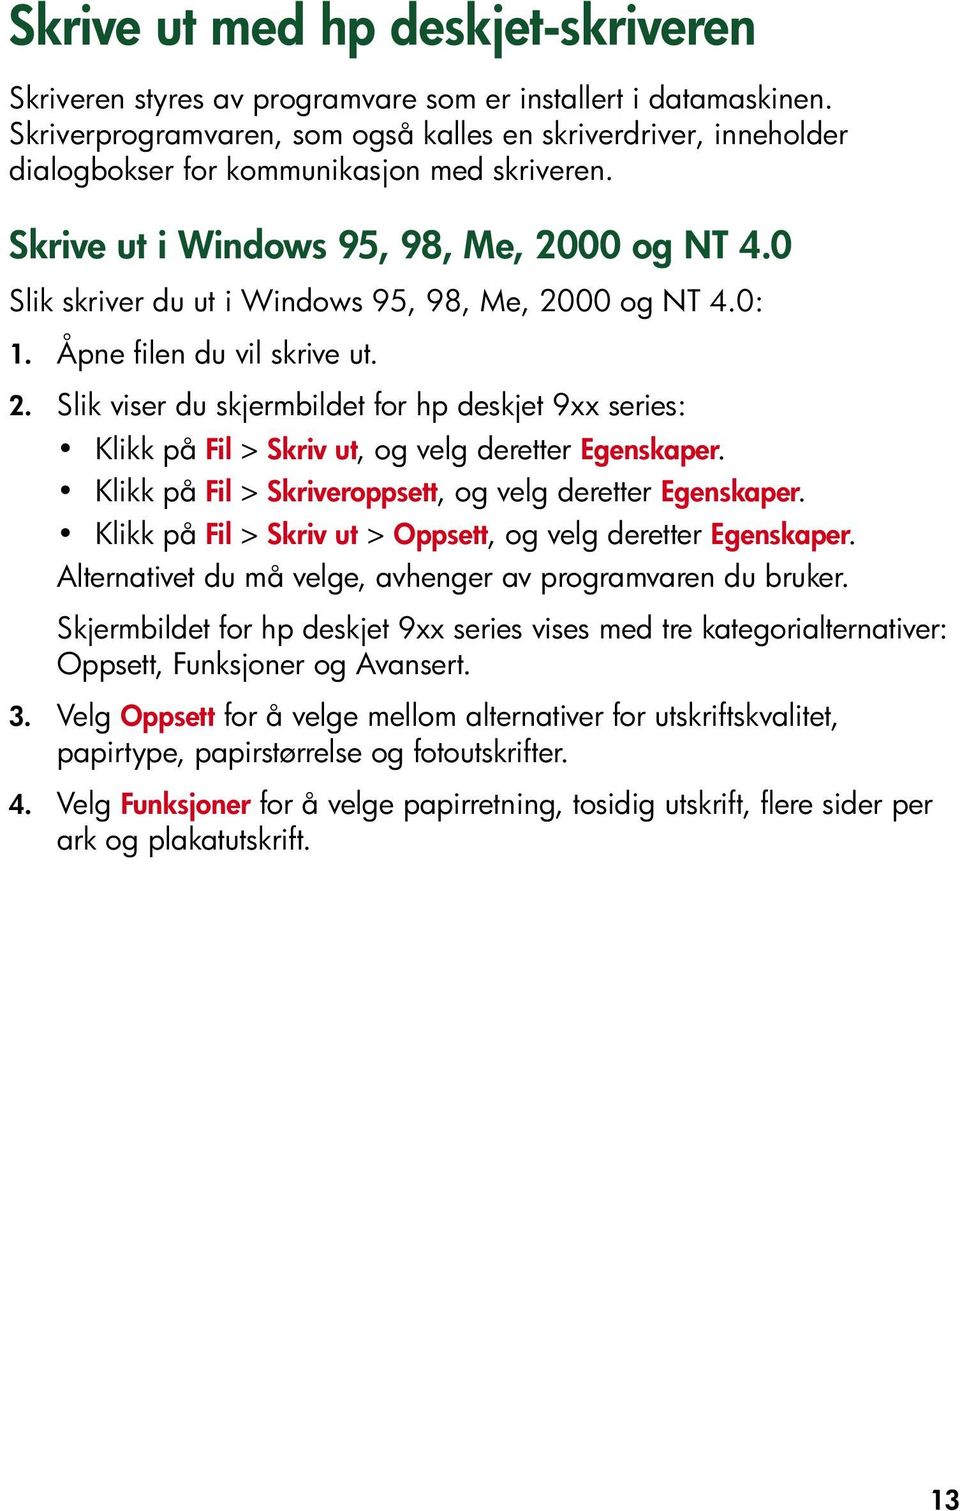 0 Slik skriver du ut i Windows 95, 98, Me, 2000 og NT 4.0: 1. Åpne filen du vil skrive ut. 2. Slik viser du skjermbildet for hp deskjet 9xx series: Klikk på Fil > Skriv ut, og velg deretter Egenskaper.